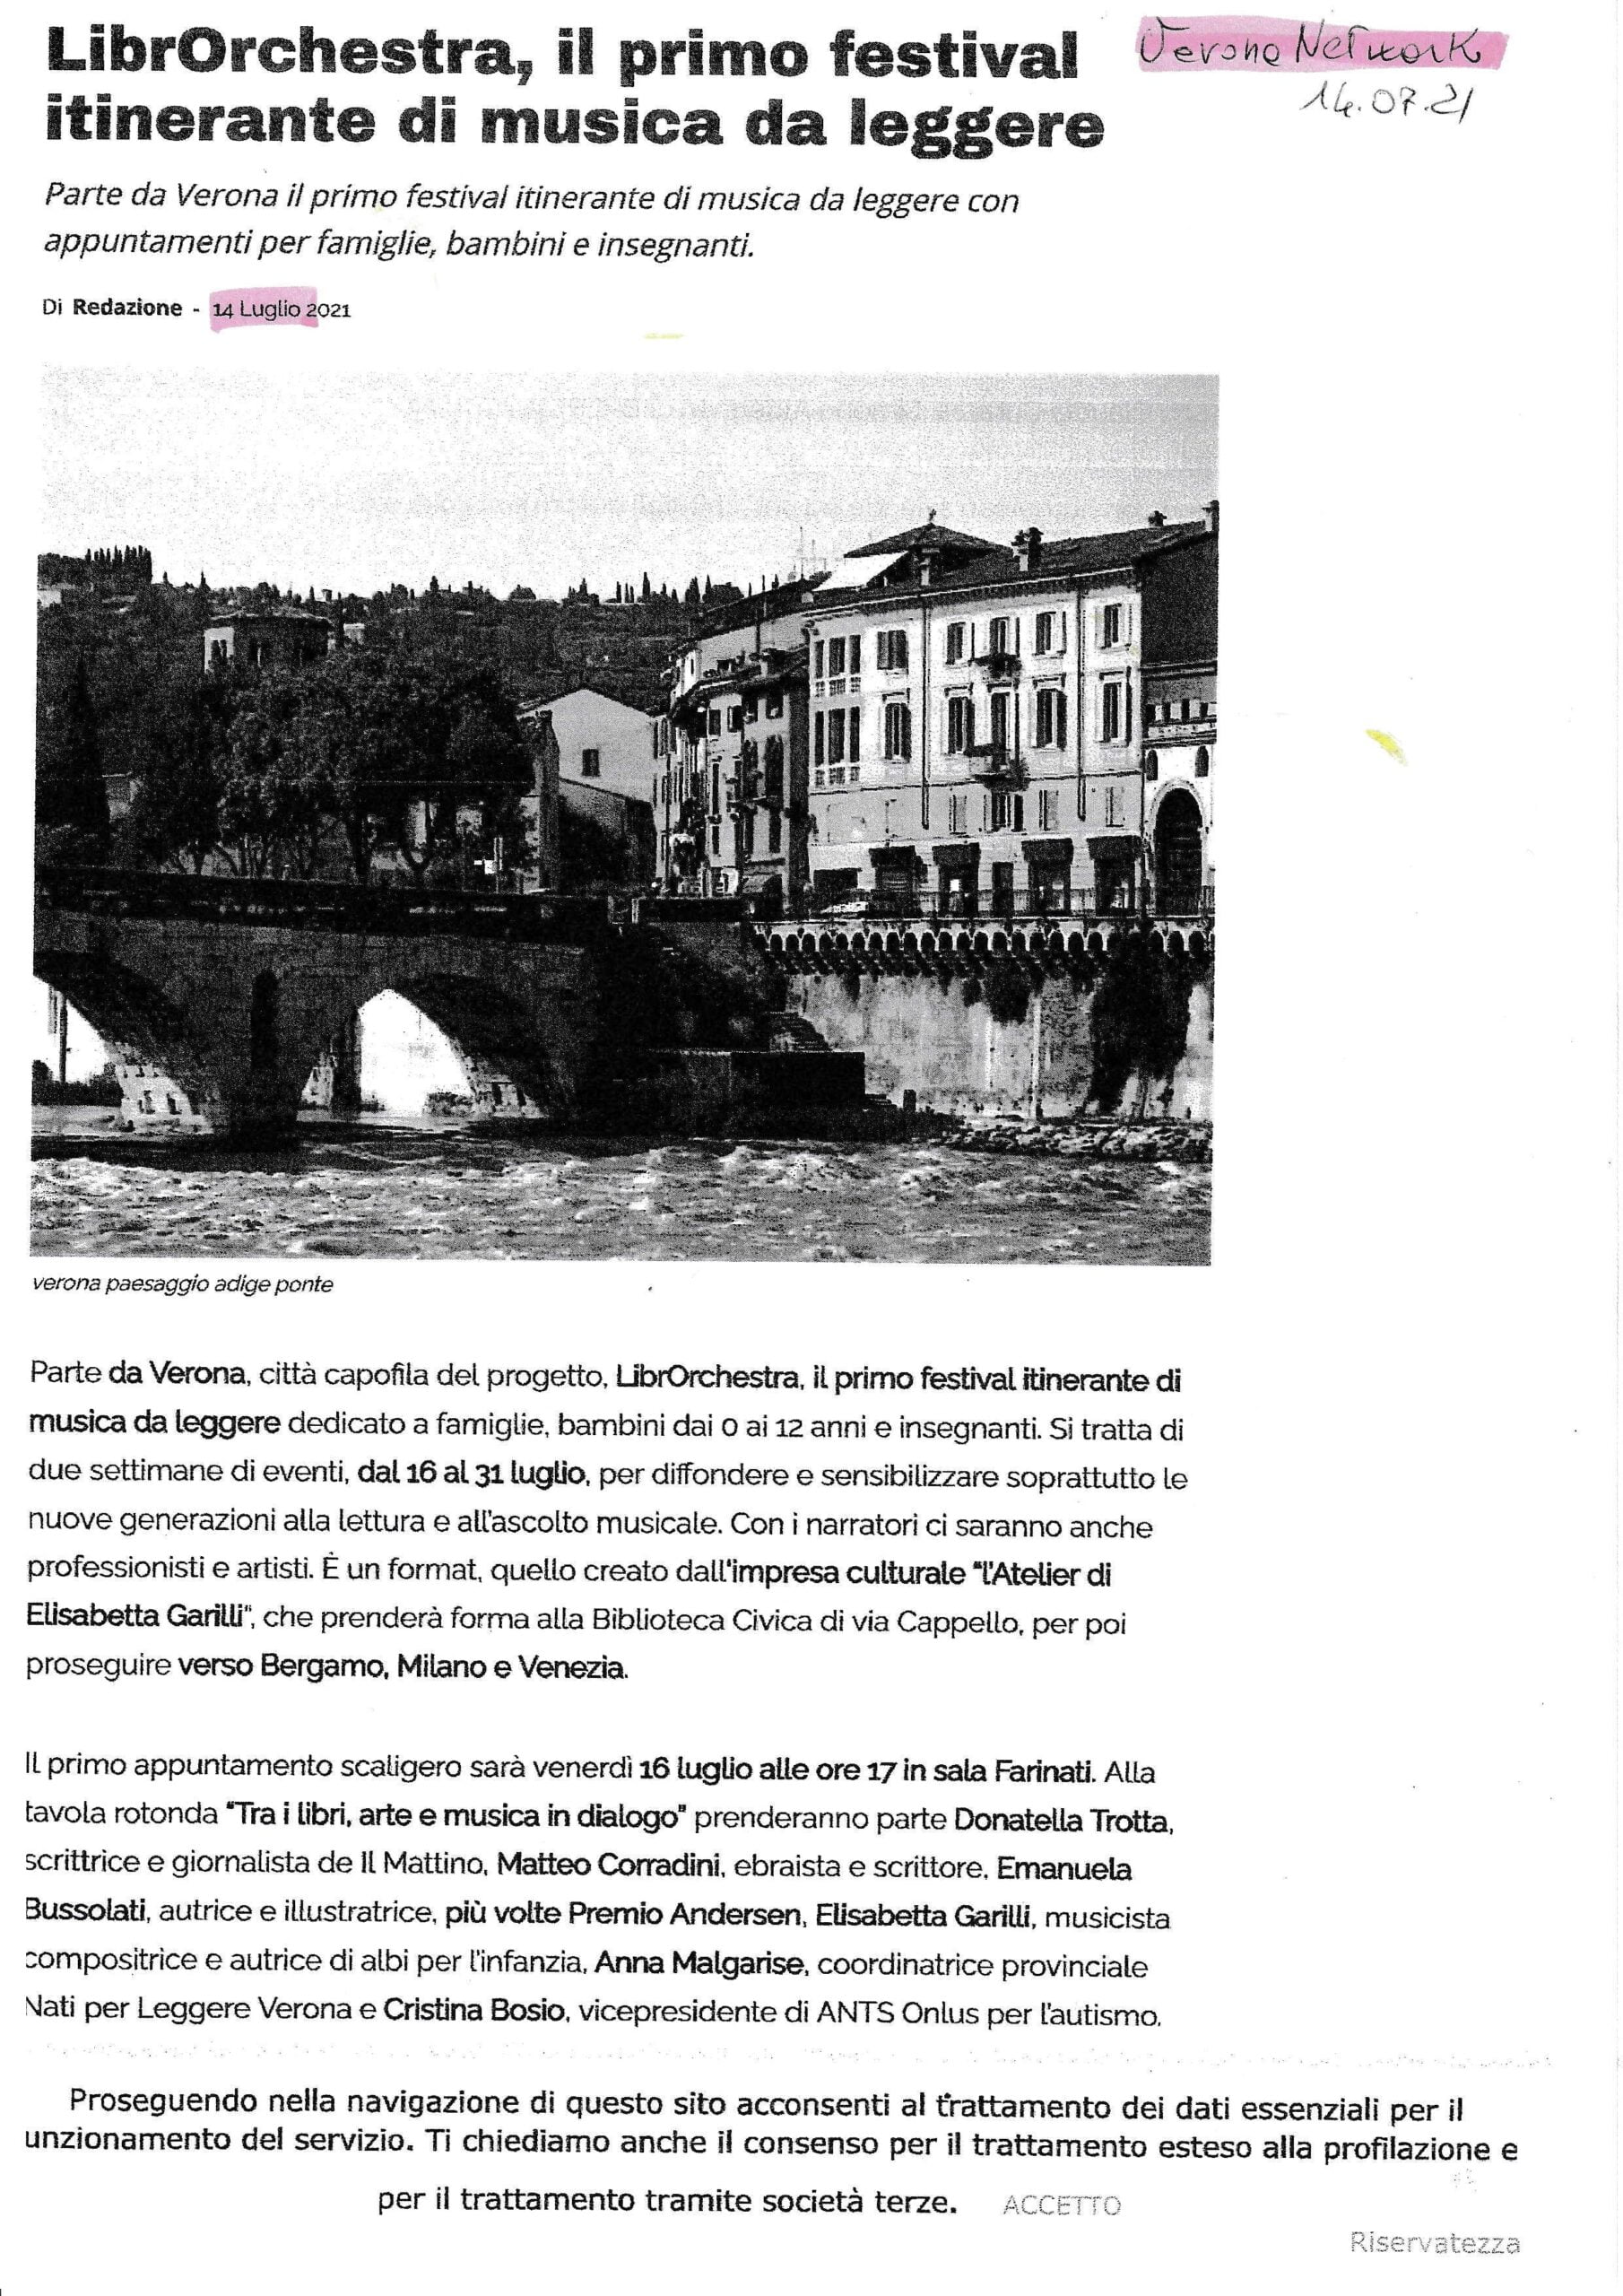 2021.07.15 Verona In Librorchestra il primo festival itinerante di musica da leggere scaled